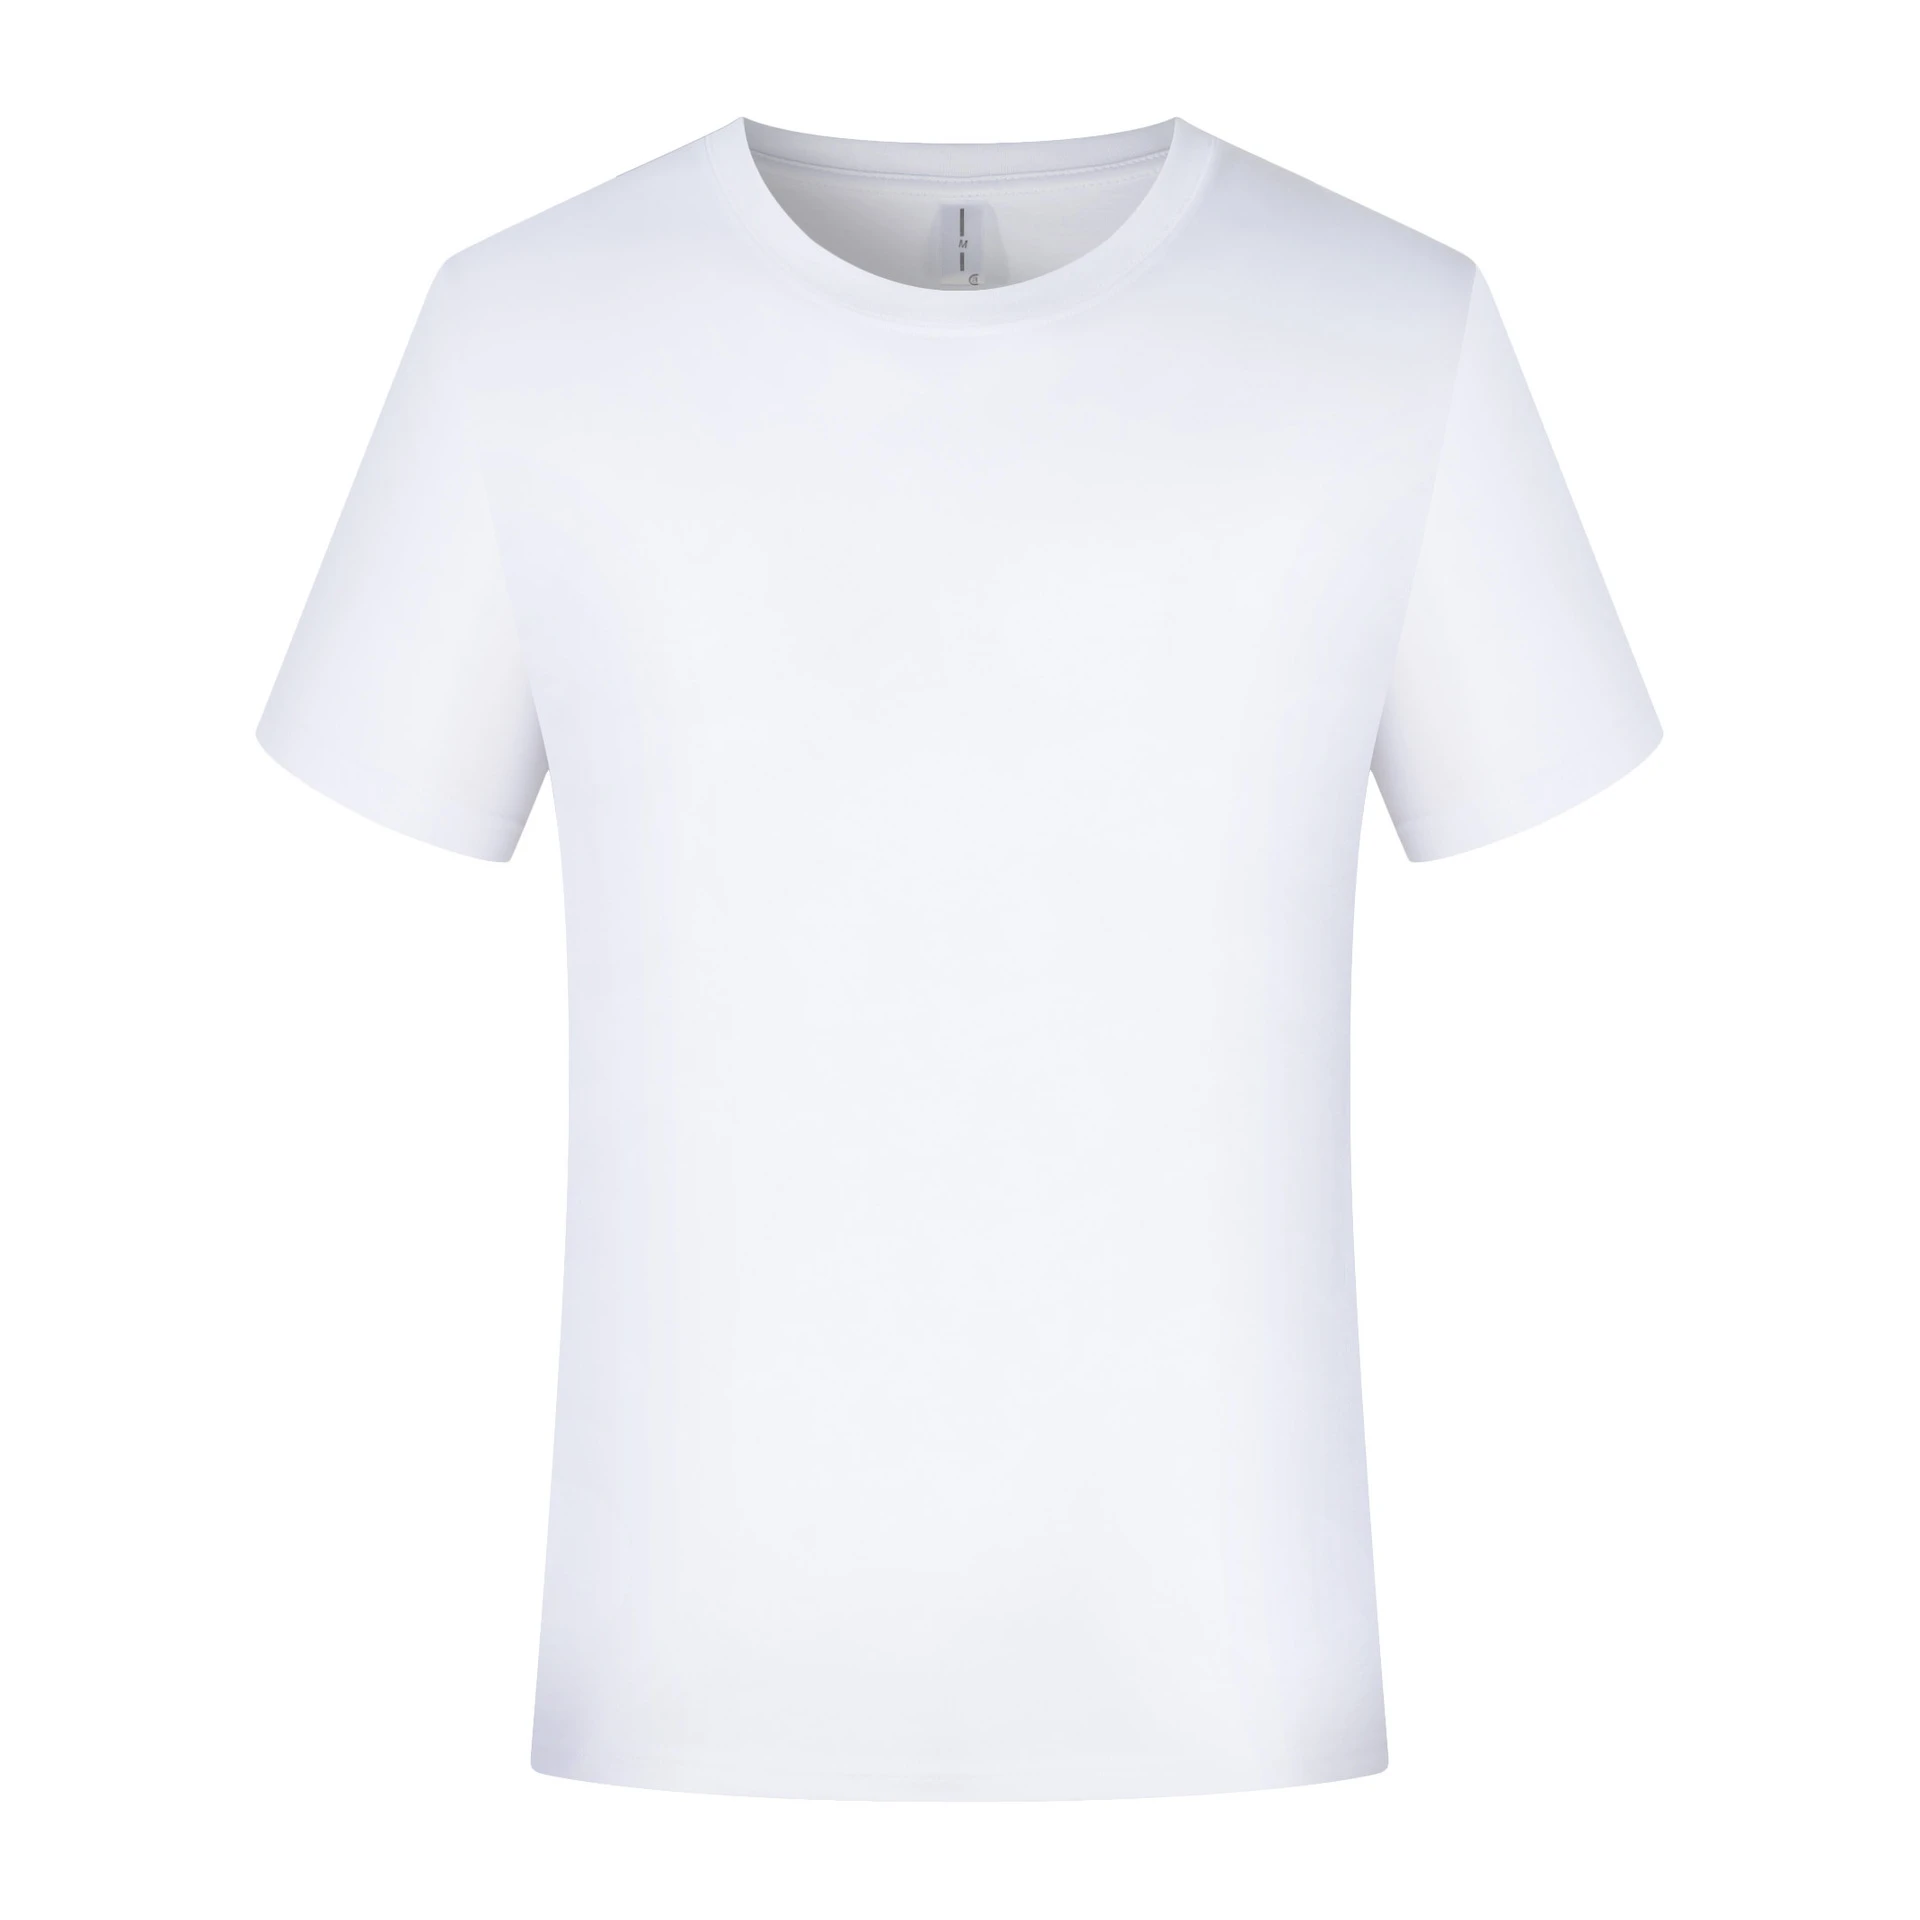 Wholesale Cheap Promotion T Shirt Men Plain Short Sleeve